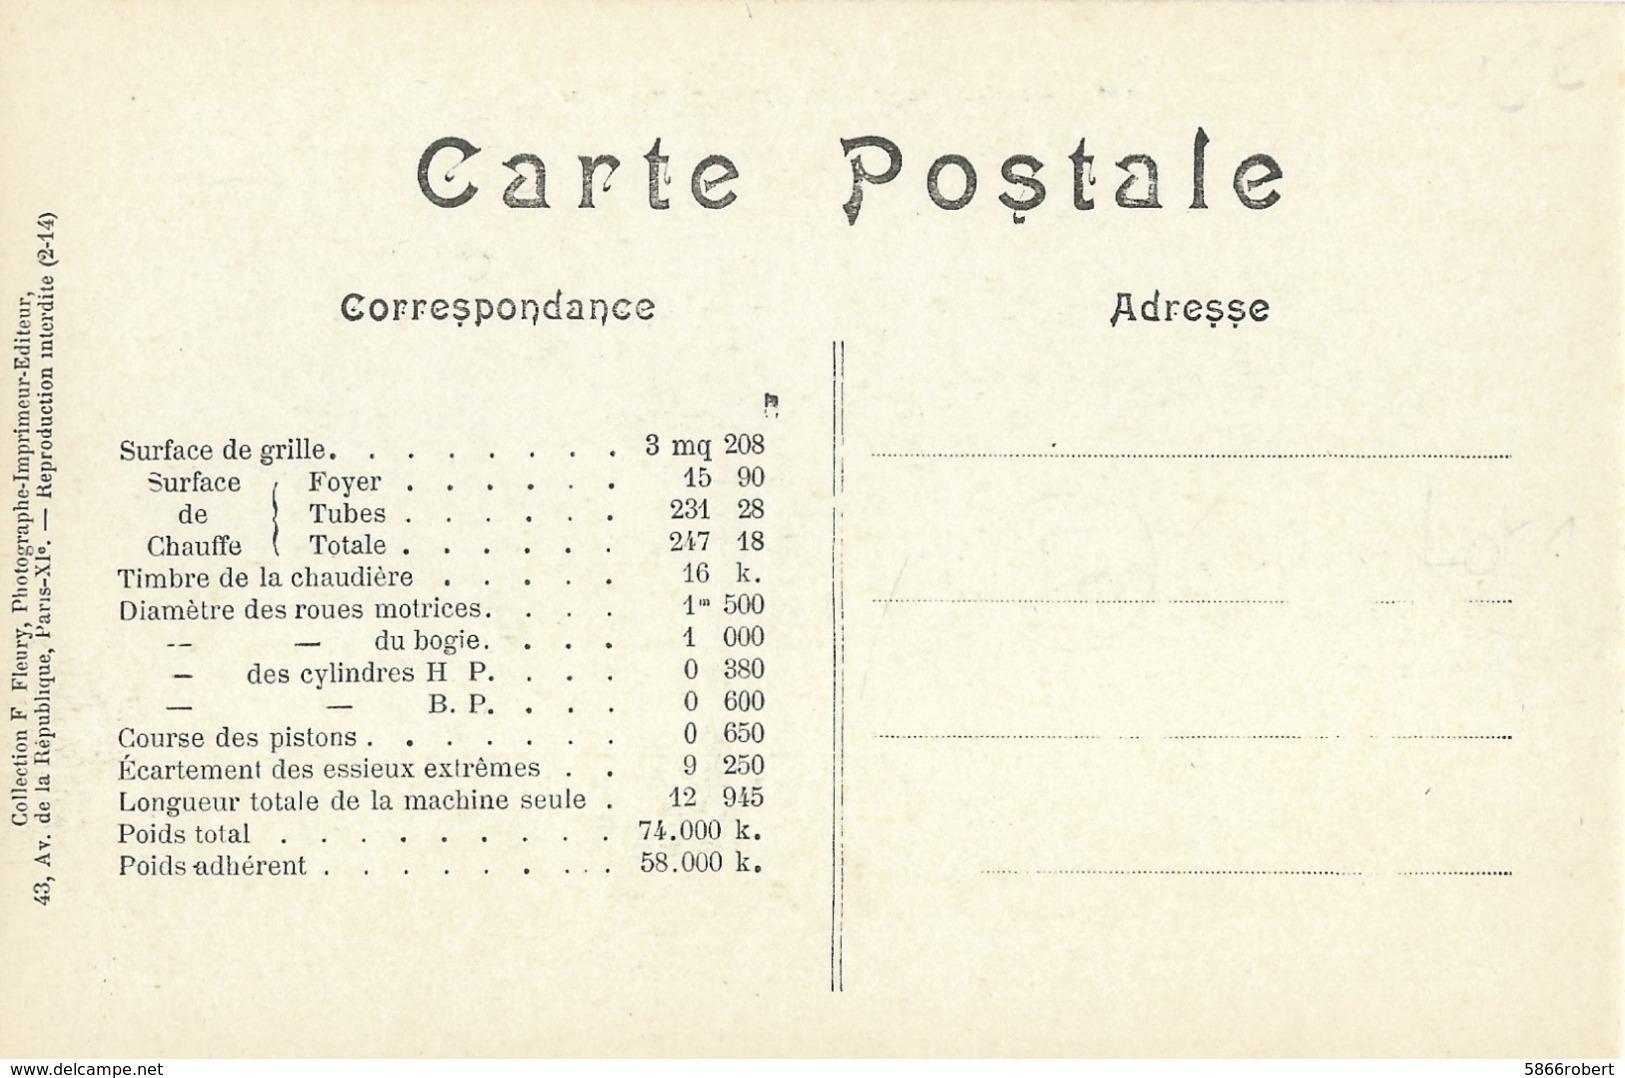 CARTE POSTALE ORIGINALE ANCIENNE : LOCOMOTIVE FRANCAISE A VAPEUR ( P. L. M.) MACHINE N° 4838 DE 1908 A 1909 - Equipment